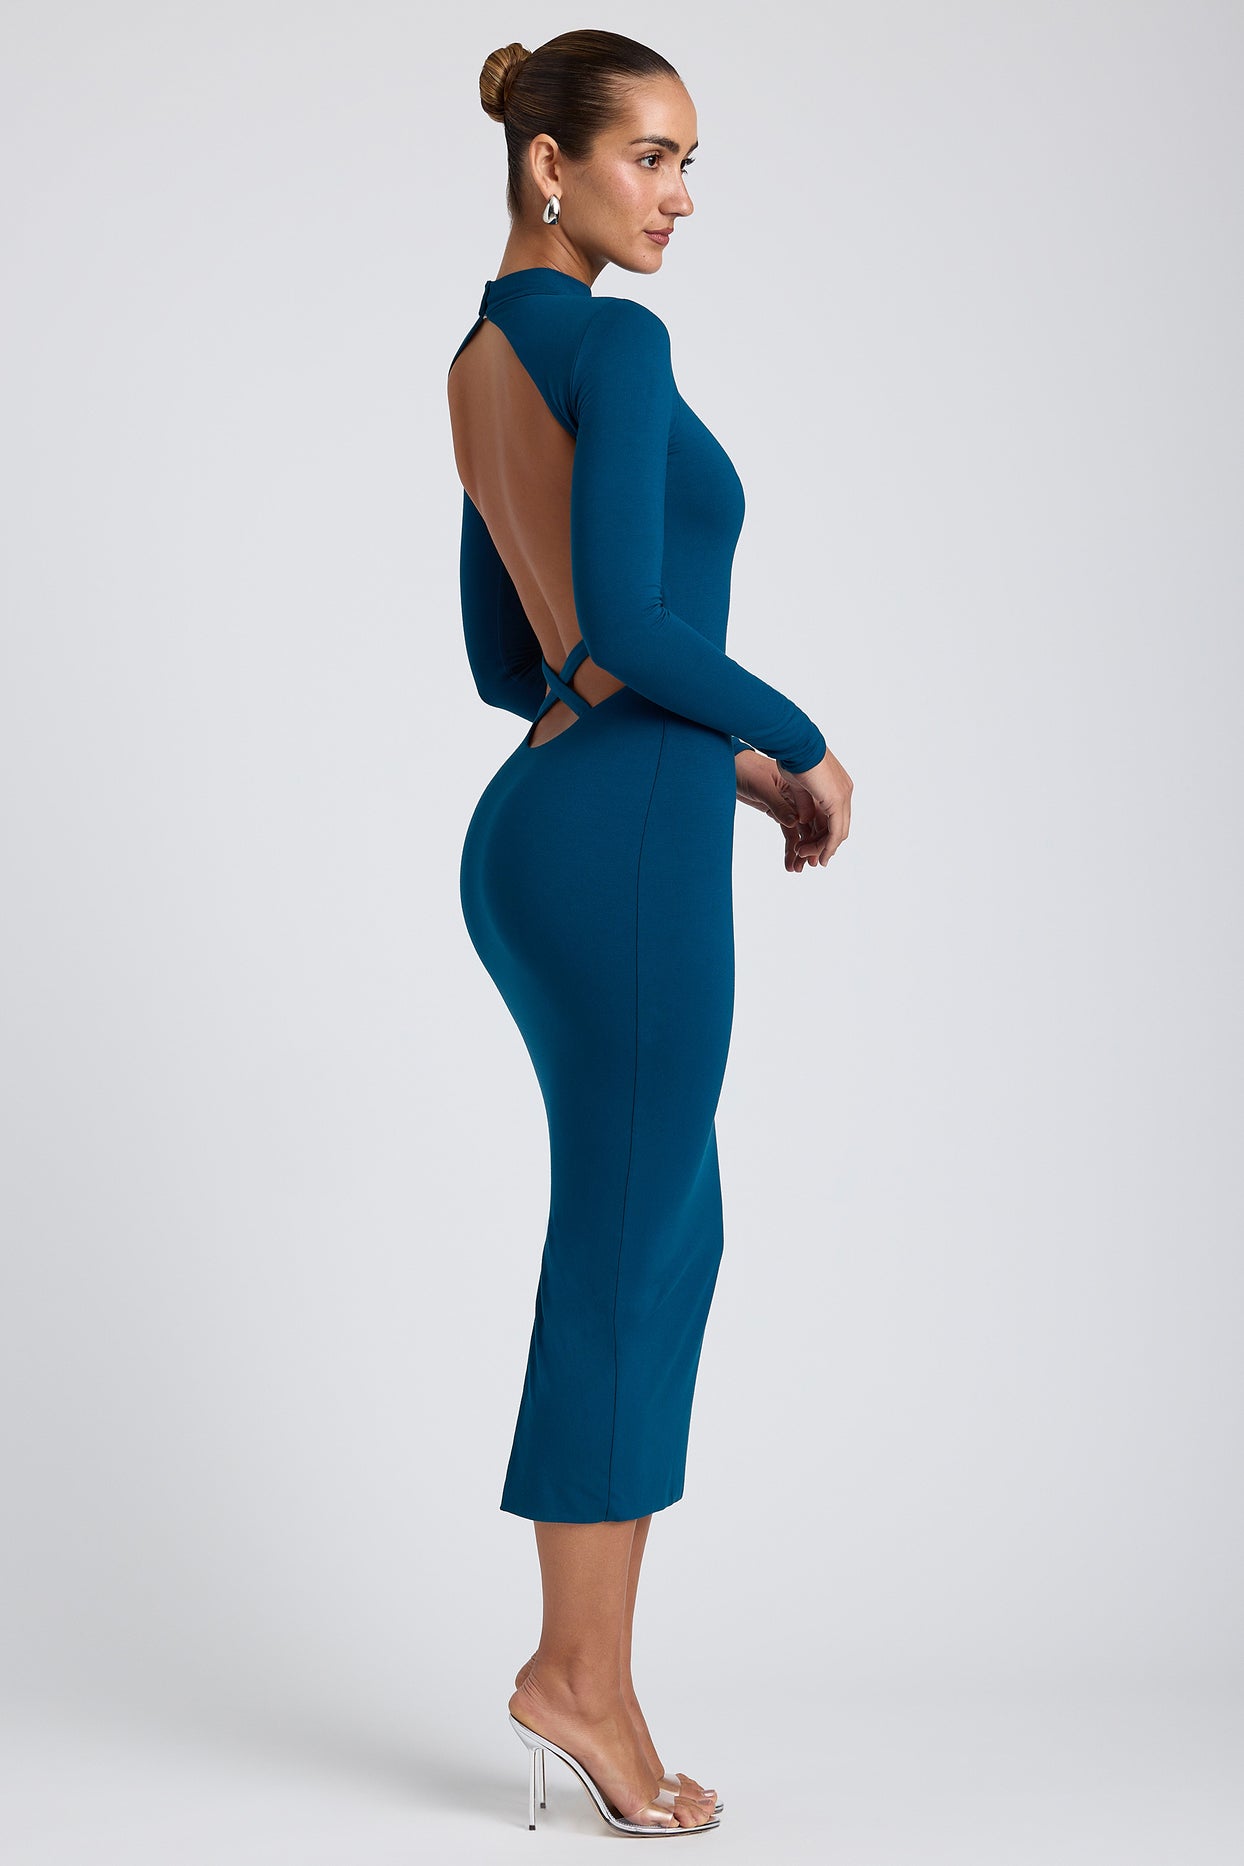 Modalna sukienka midaxi ze skrzyżowanymi plecami w kolorze głębokiego turkusu